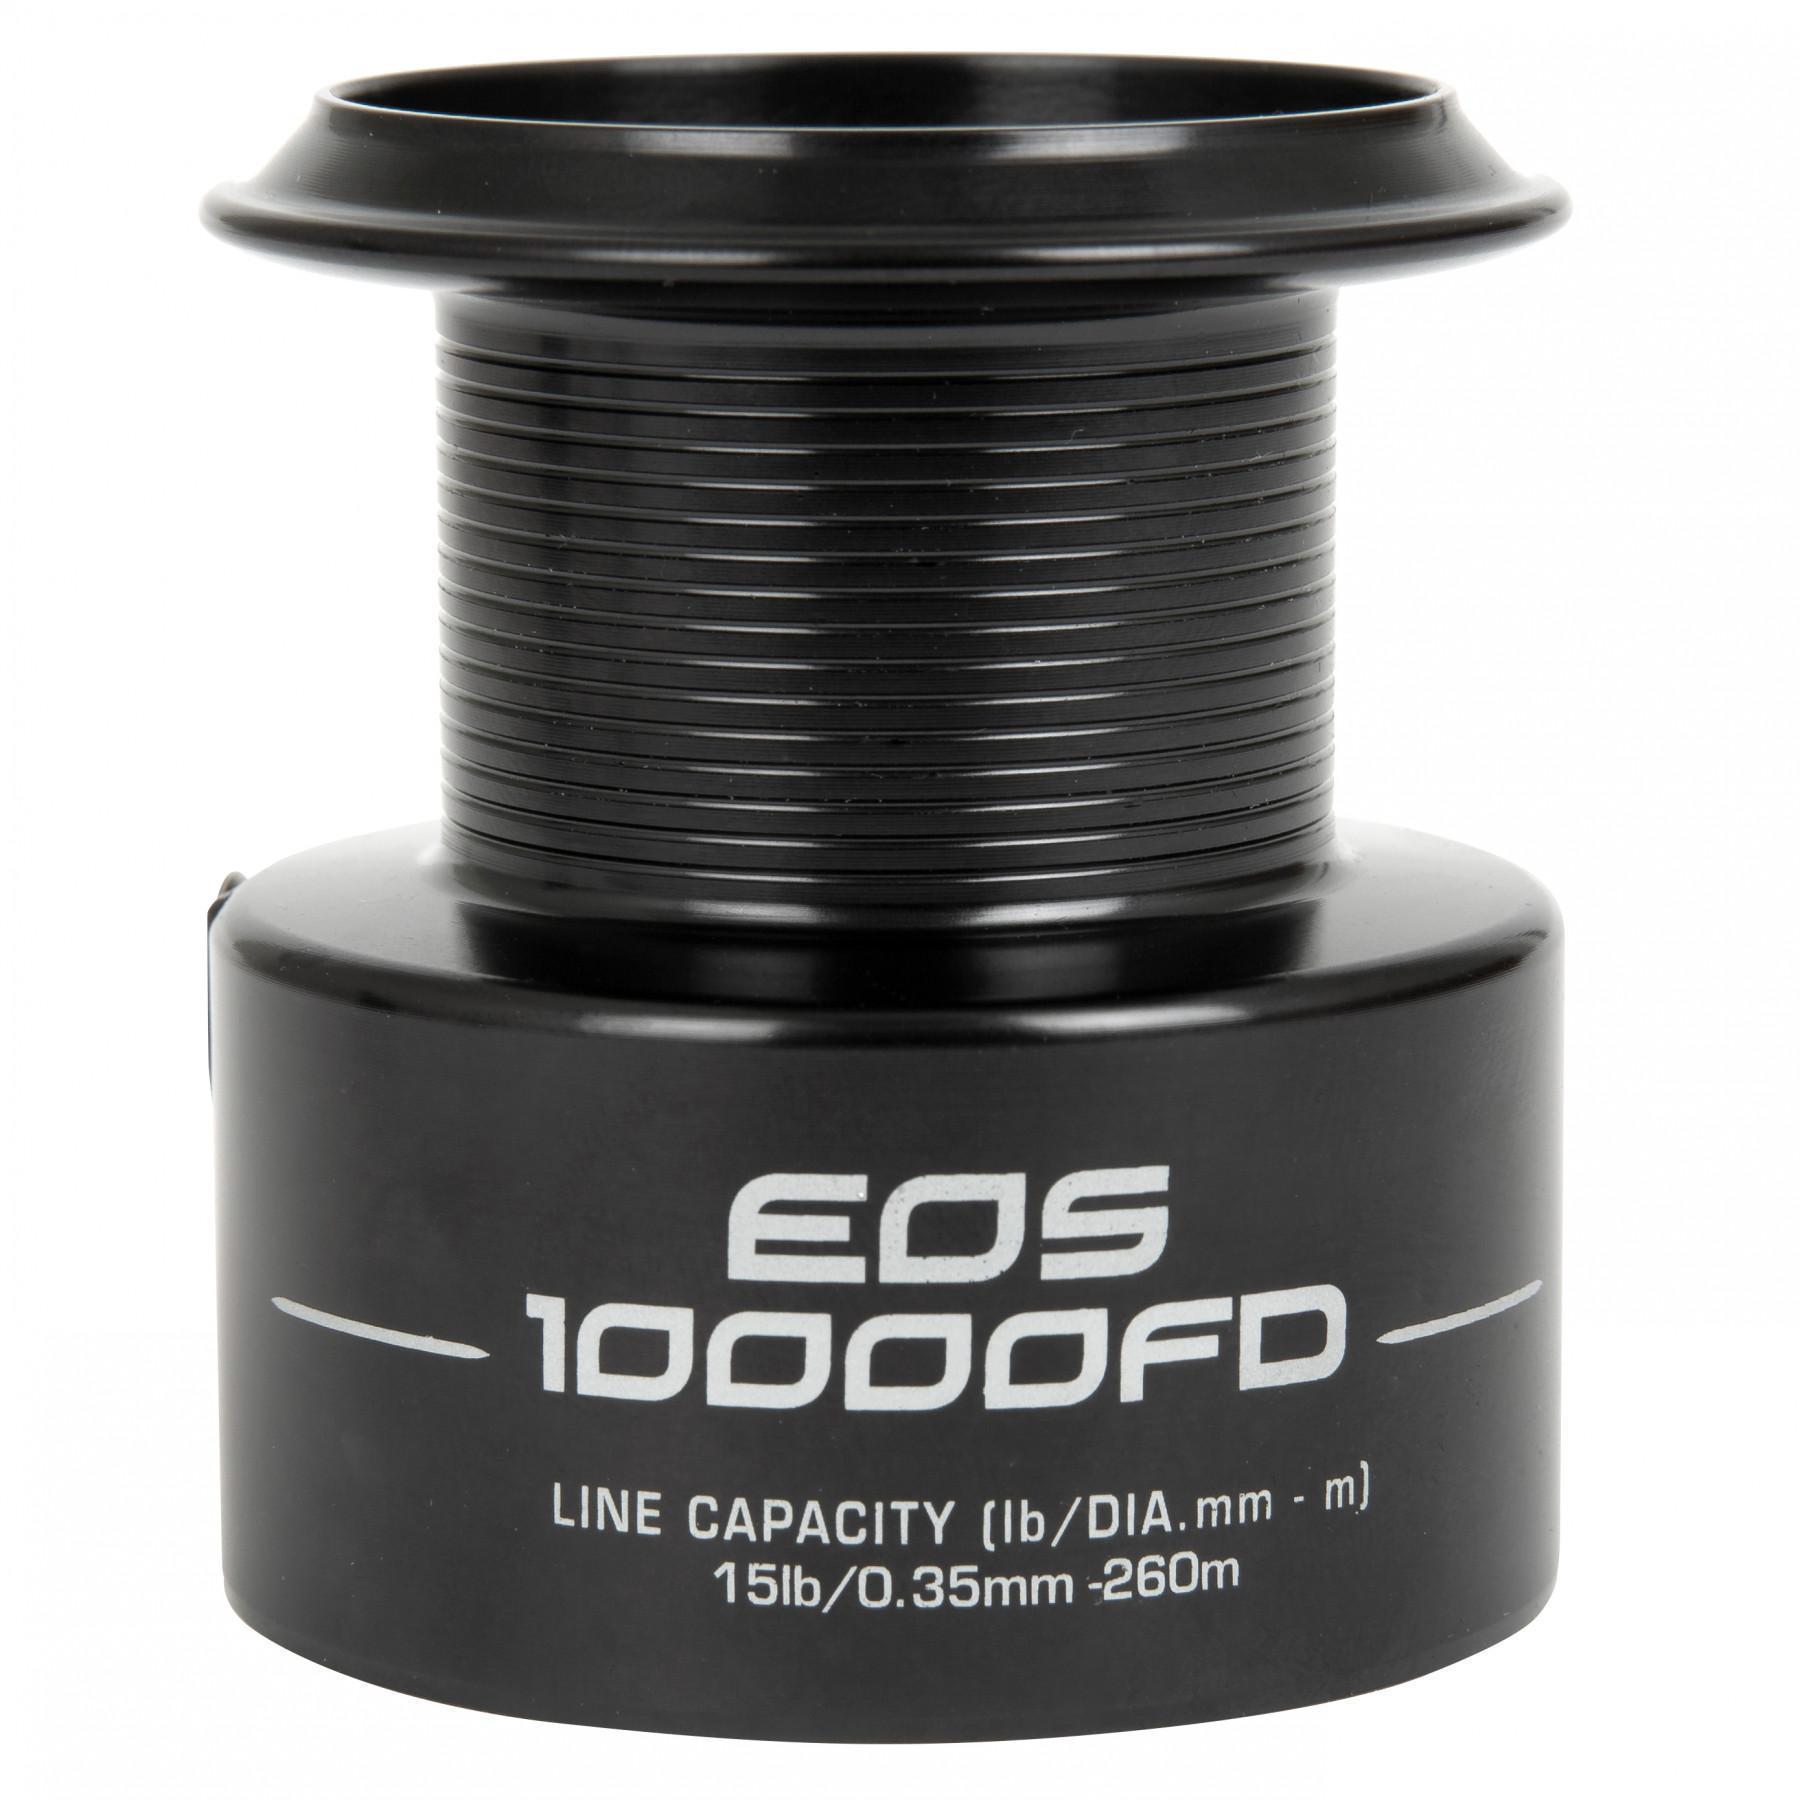 Extra spole för eos-rullar Fox 10000 FD